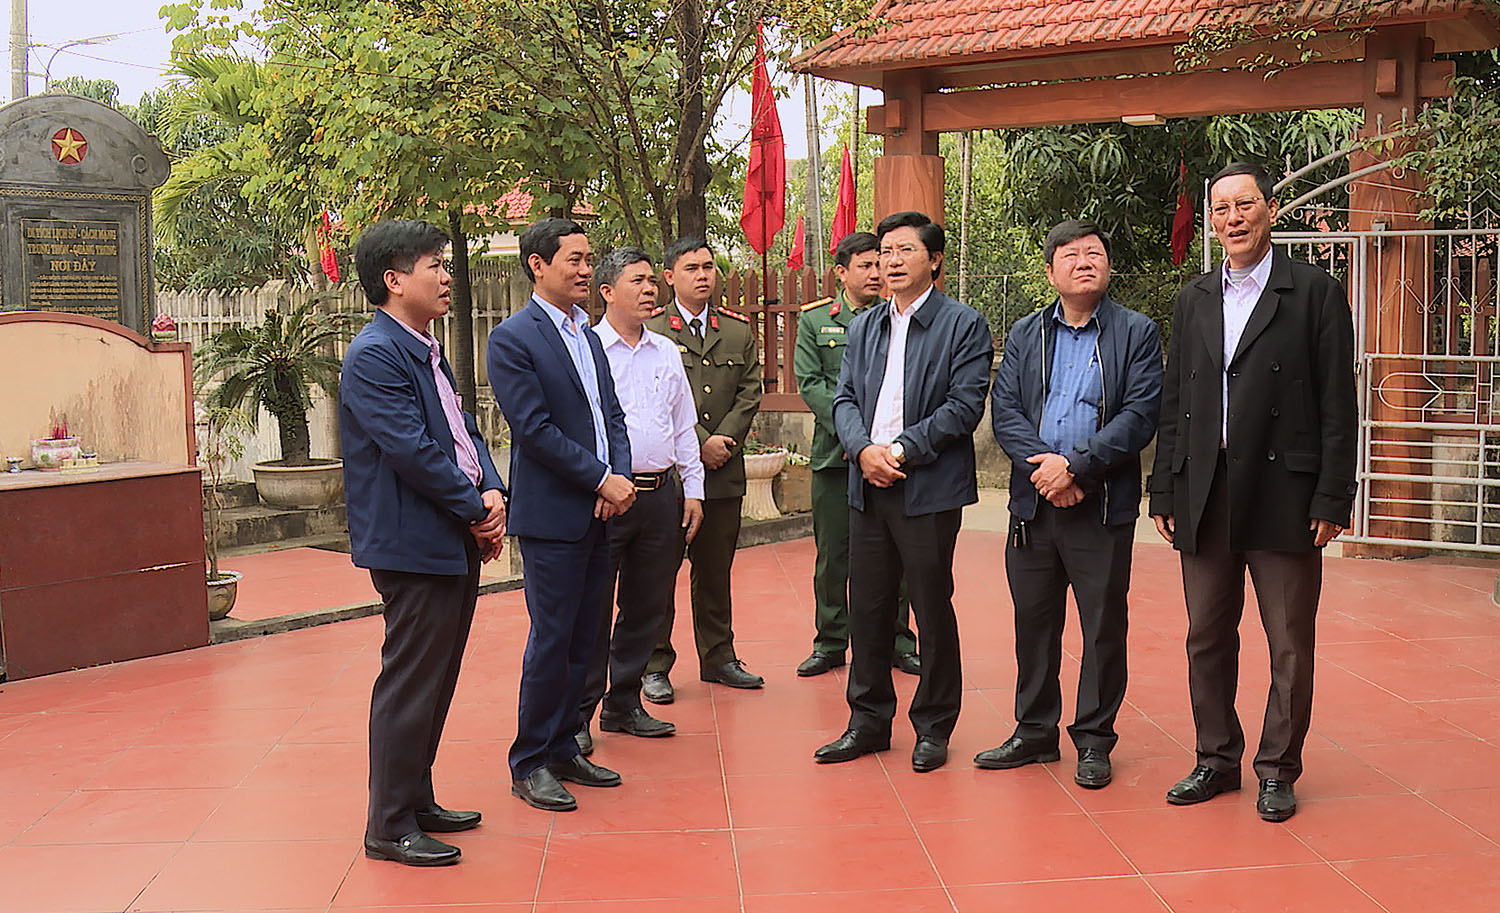 Đồng chí Bí thư Thị ủy Ba Đồn Trương An Ninh thăm và khảo sát thực tế tại nhà lưu niệm Trung tướng Đồng Sỹ Nguyên.